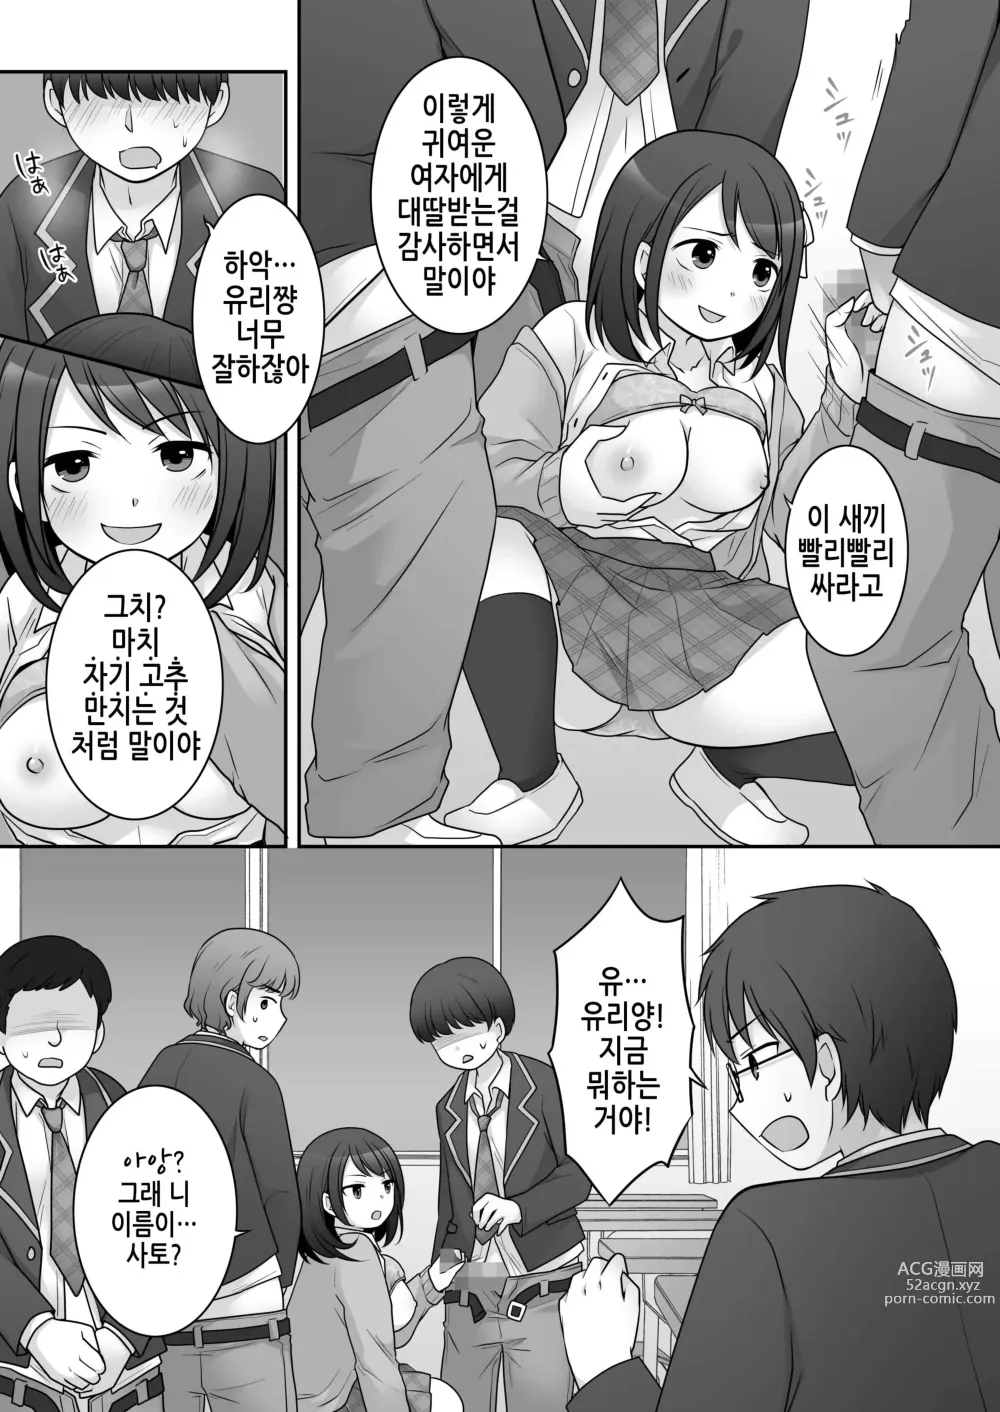 Page 12 of doujinshi 불량 in 그녀 내 여자친구의 몸뚱이는 불량남에게 납치되었다.